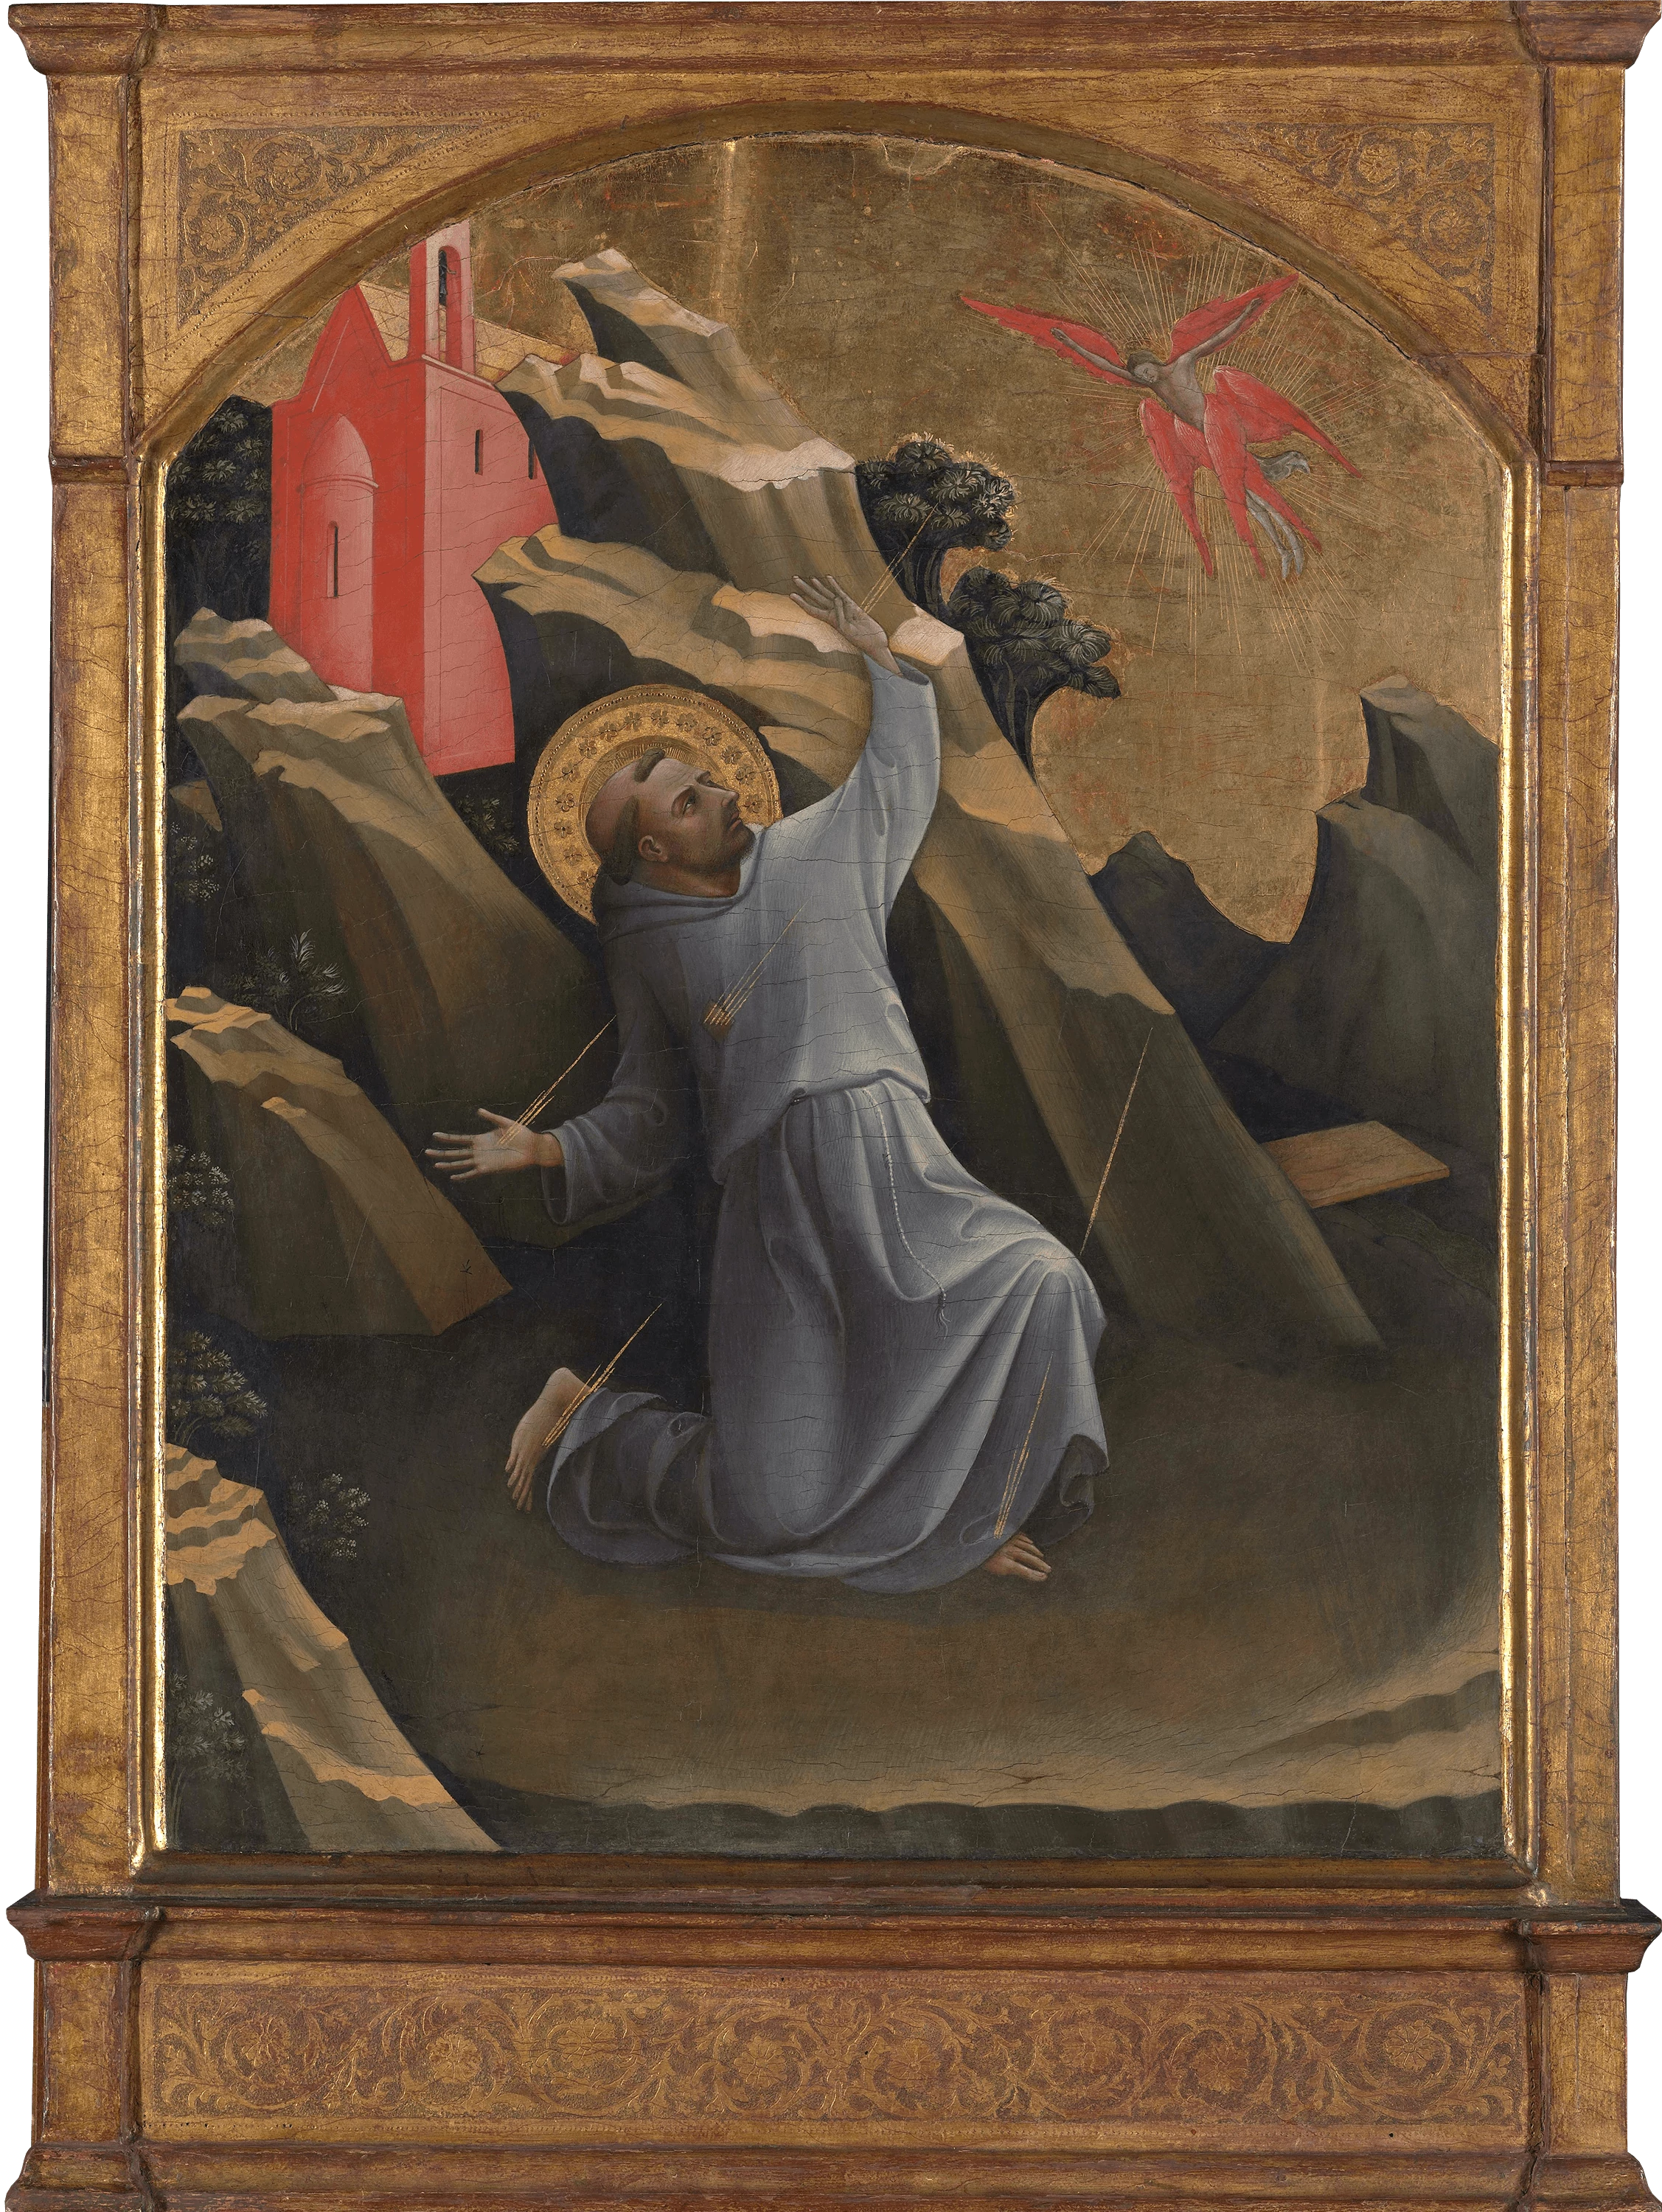 Saint Francis Receiving the Stigmata, Lorenzo Monaco